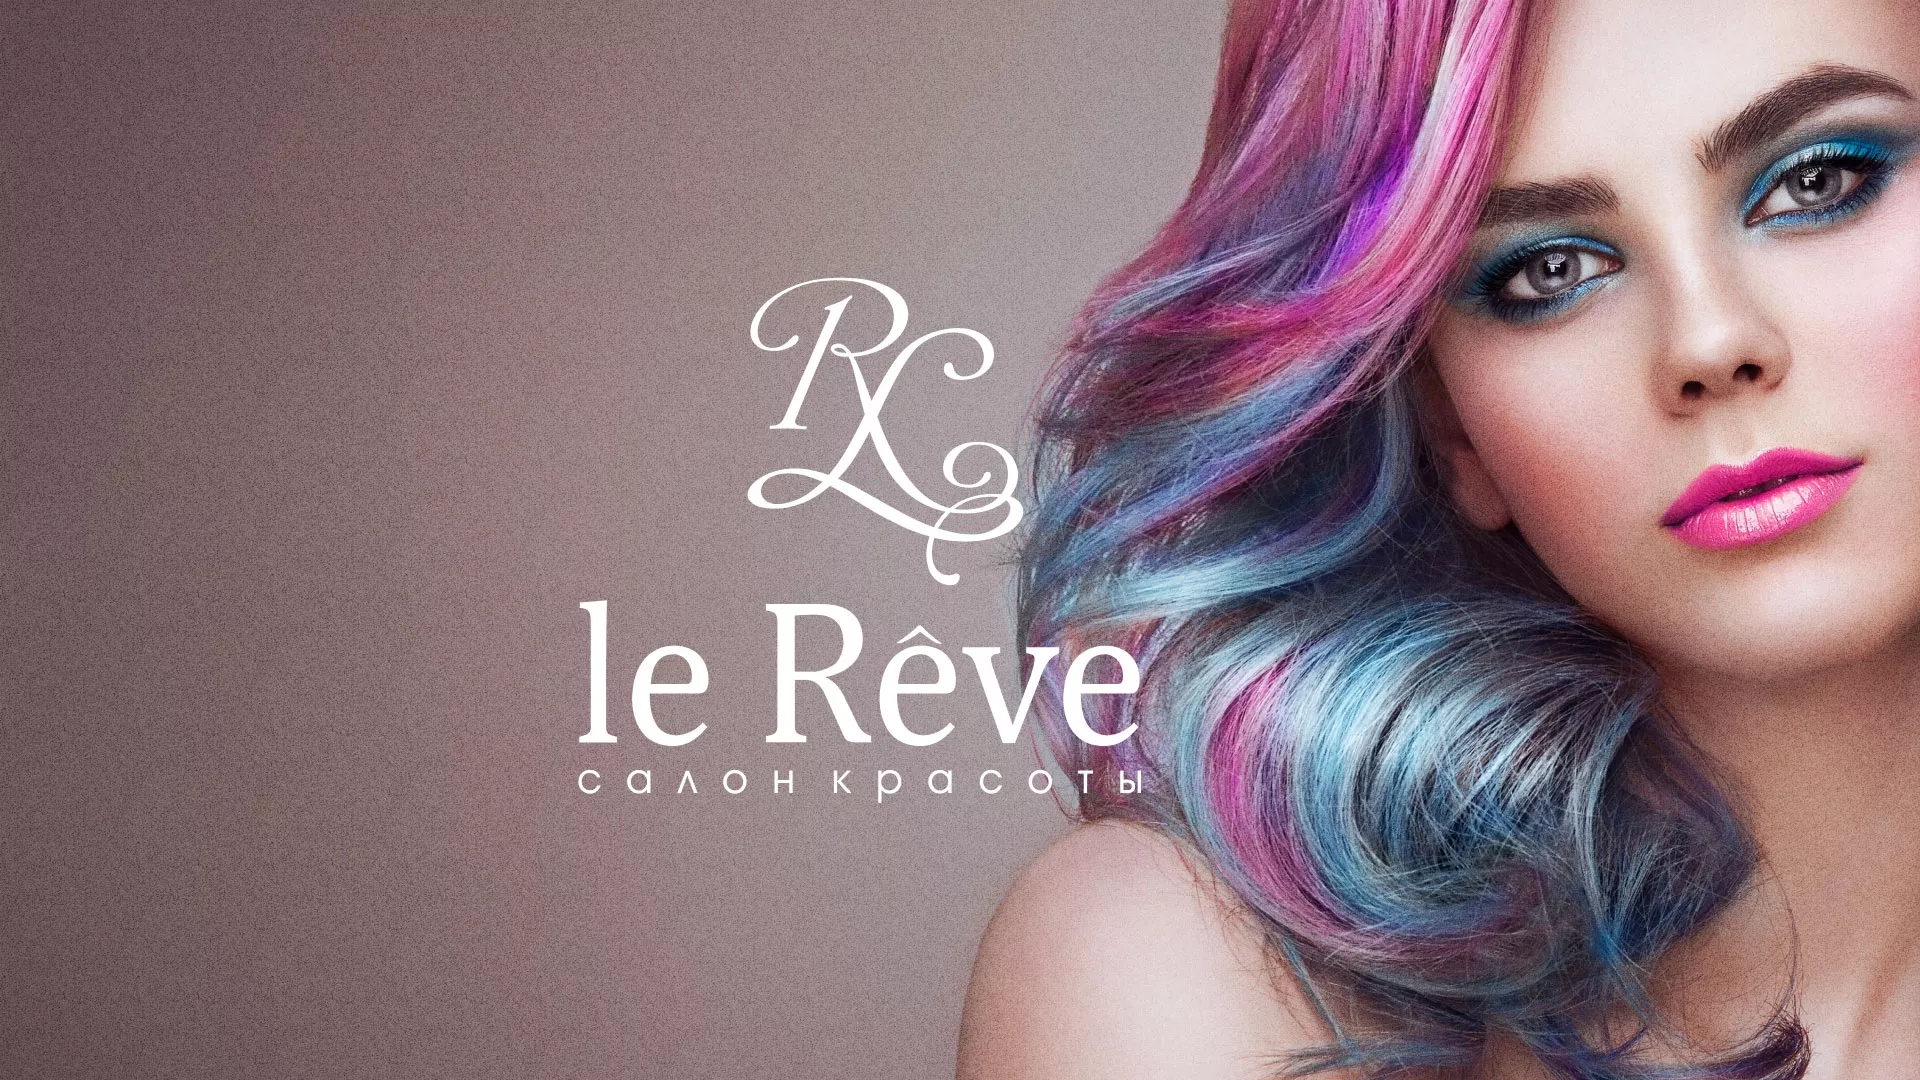 Создание сайта для салона красоты «Le Reve» в Чудово